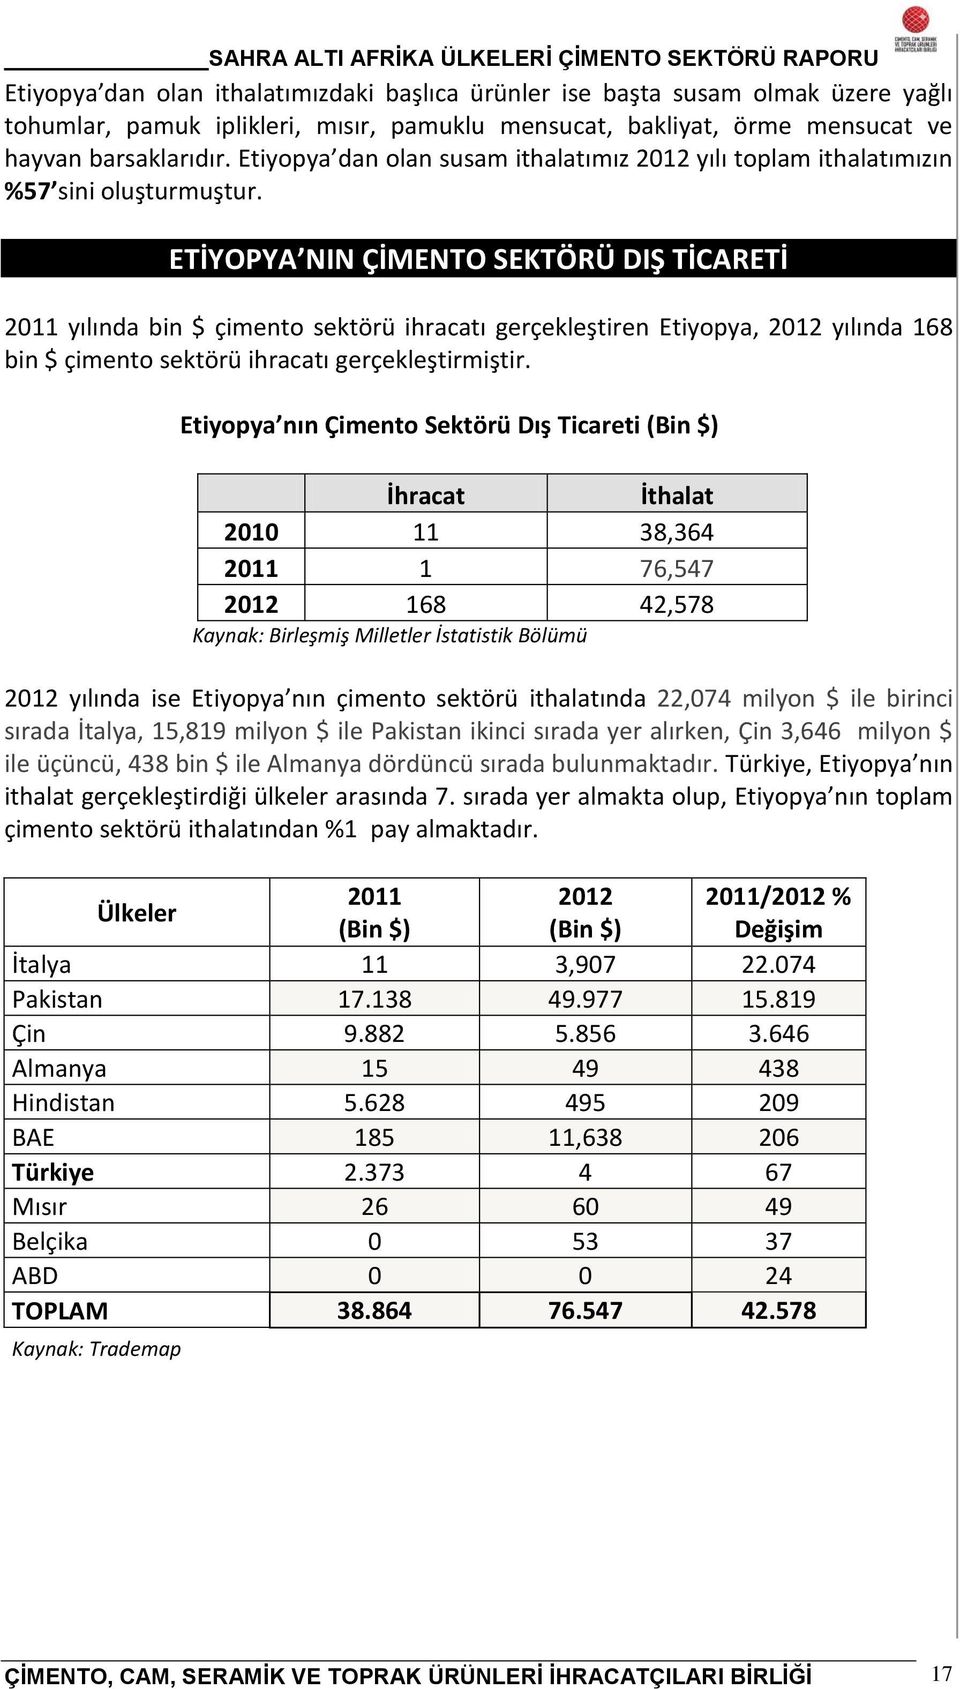 ETİYOPYA NIN ÇİMENTO SEKTÖRÜ DIŞ TİCARETİ 2011 yılında bin $ çimento sektörü ihracatı gerçekleştiren Etiyopya, 2012 yılında 168 bin $ çimento sektörü ihracatı gerçekleştirmiştir.